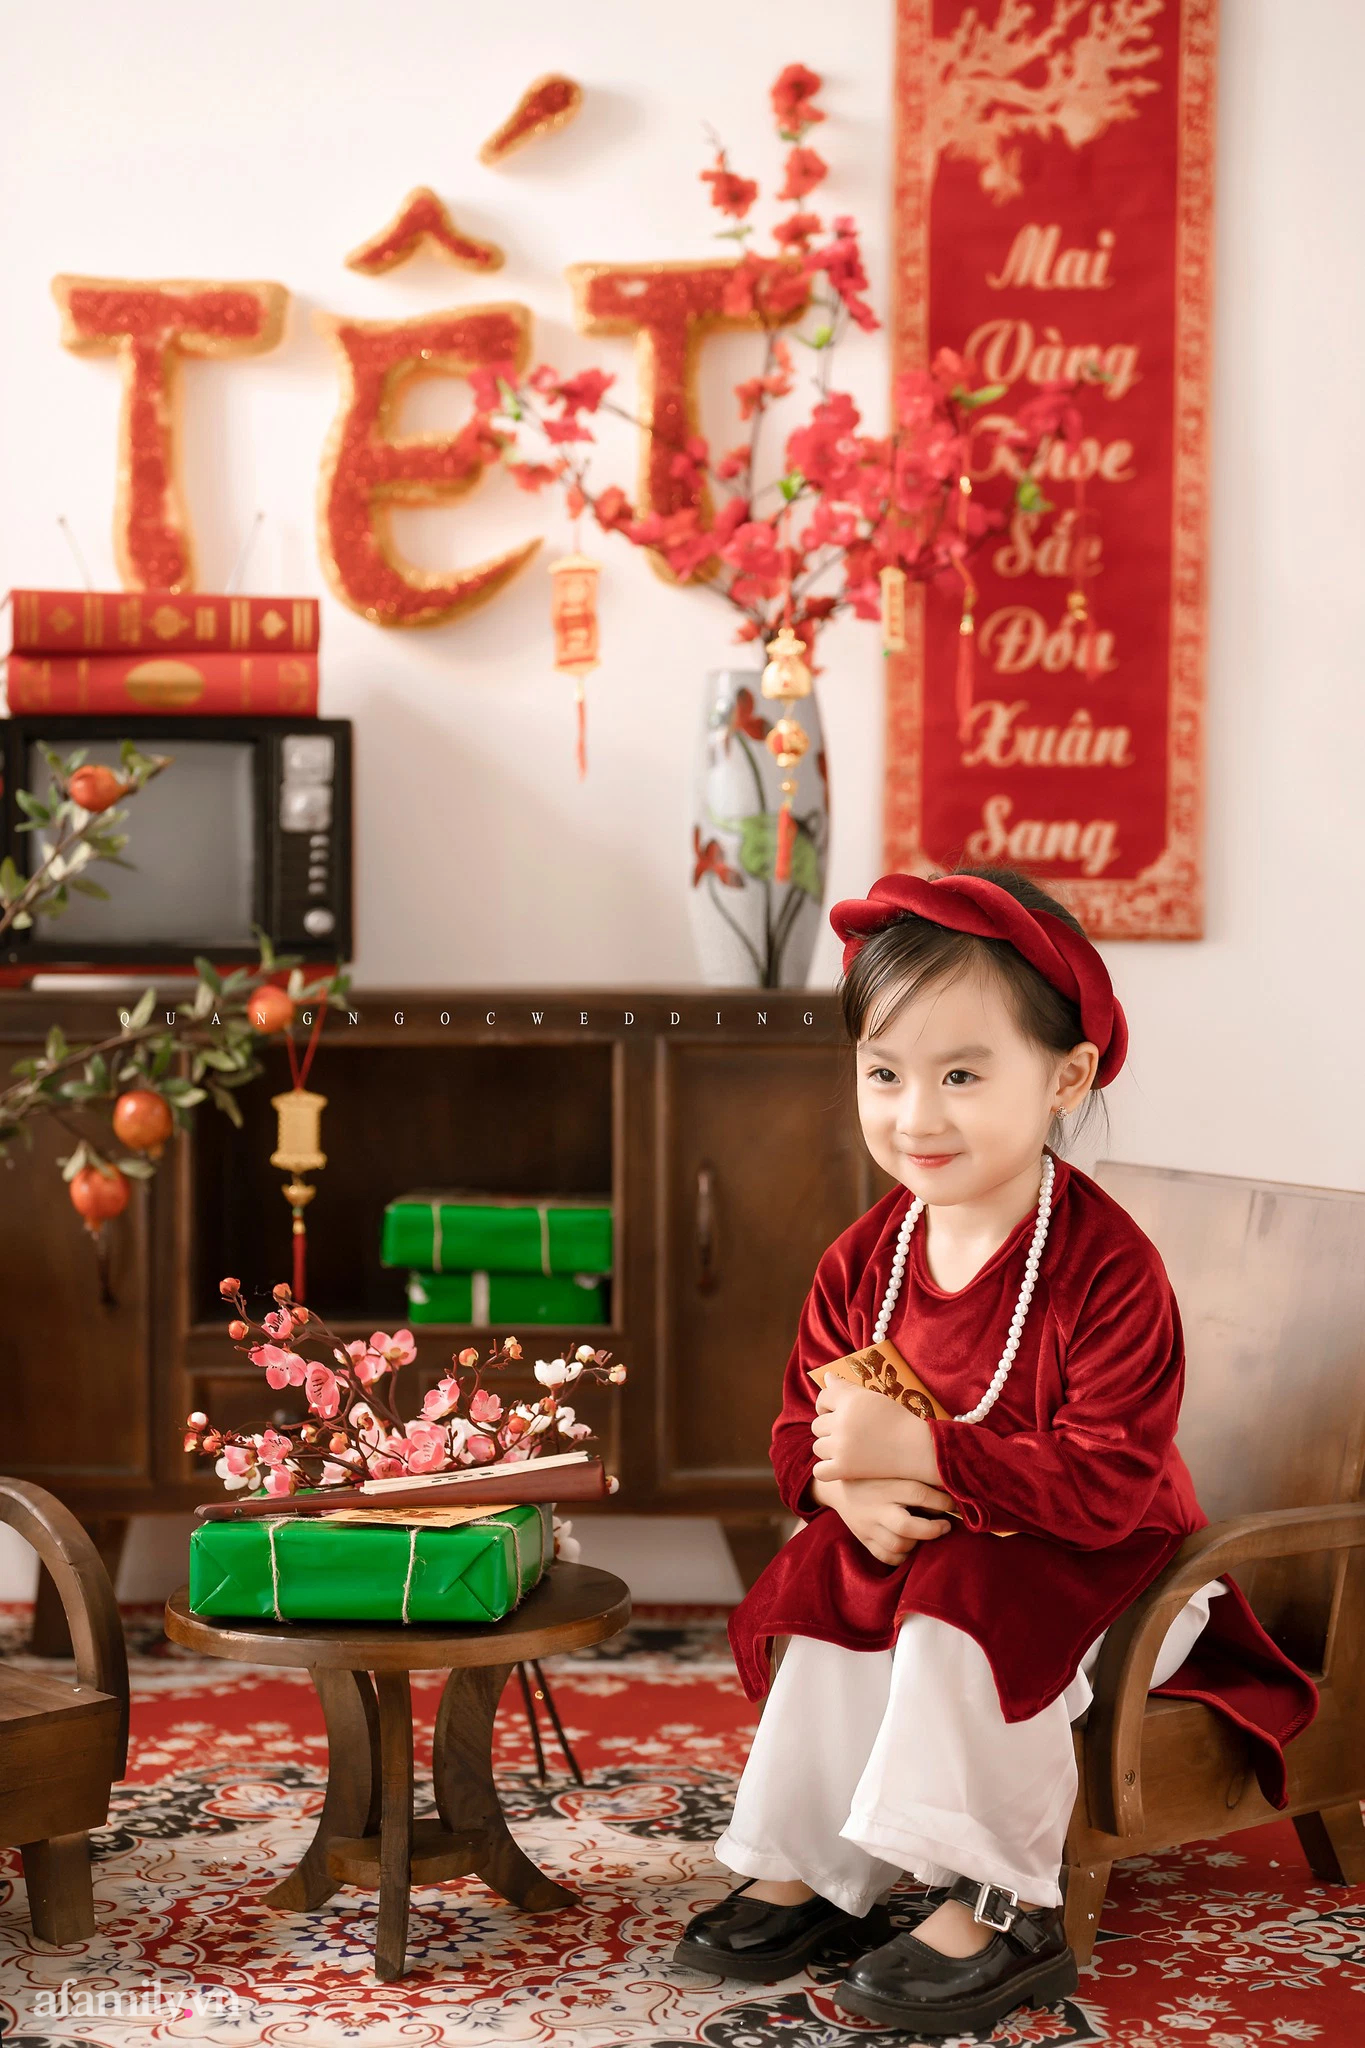 Áo dài Tết là trang phục truyền thống của người Việt, đặc biệt là với bé gái. Chụp ảnh bé gái trong bộ áo dài Tết sẽ là một kỉ niệm đáng nhớ cho cả gia đình. Hãy để La Casa Studio giúp bạn tạo nên những bức ảnh Tết đẹp nhất.